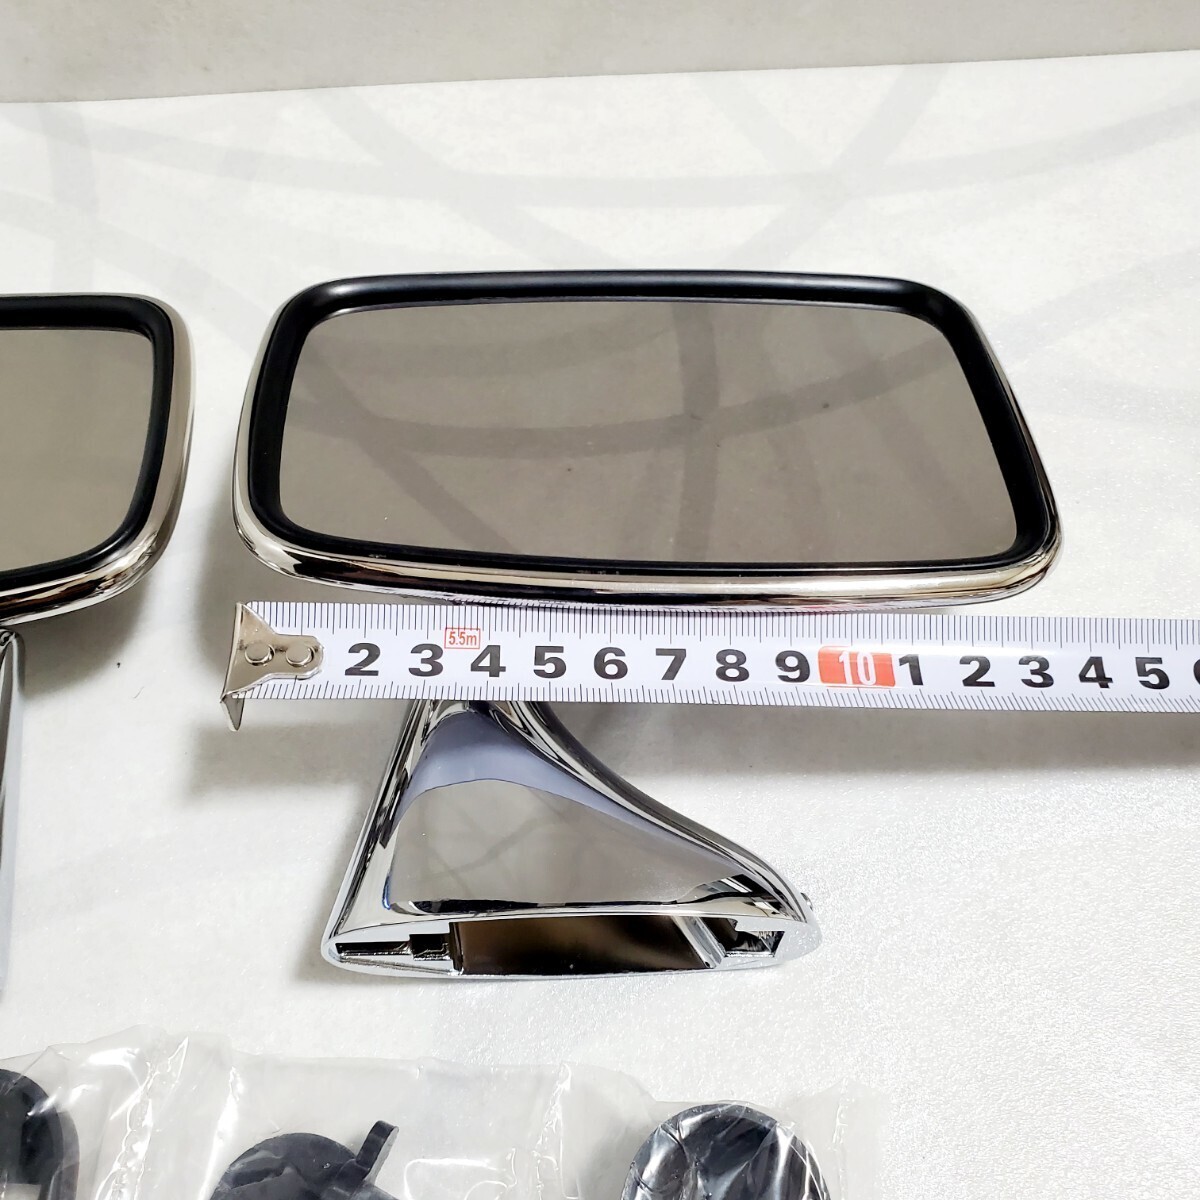  Rover Mini зеркало на двери левый и правый в комплекте TEX type нержавеющая сталь / Хромированный целый ENGLAND Британия товар Attachment, адаптор plate есть новый товар 